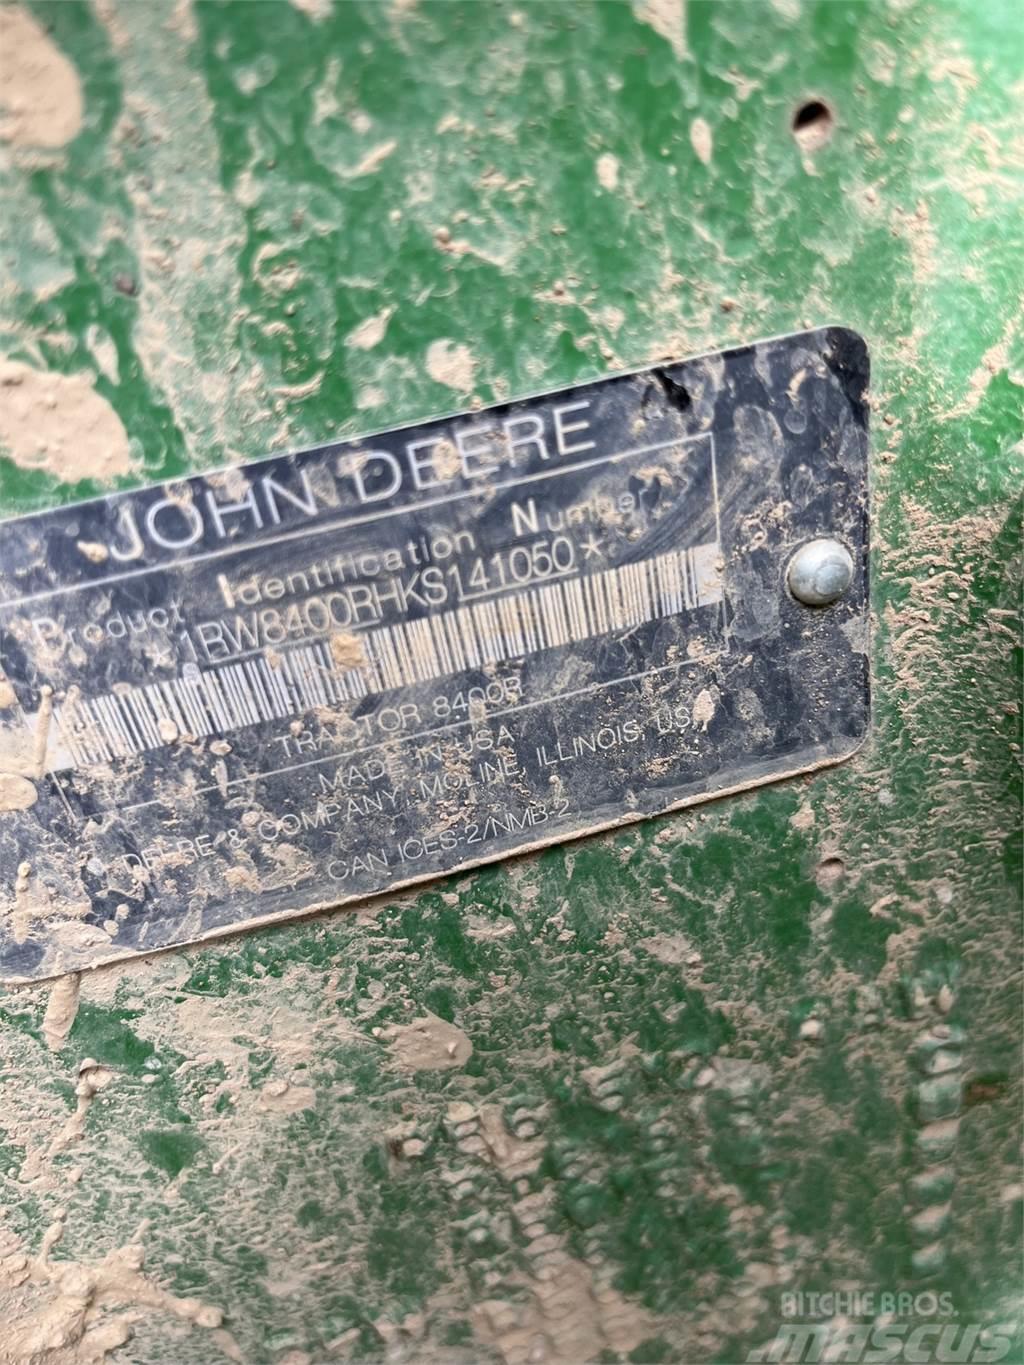 John Deere 8400R Tractors